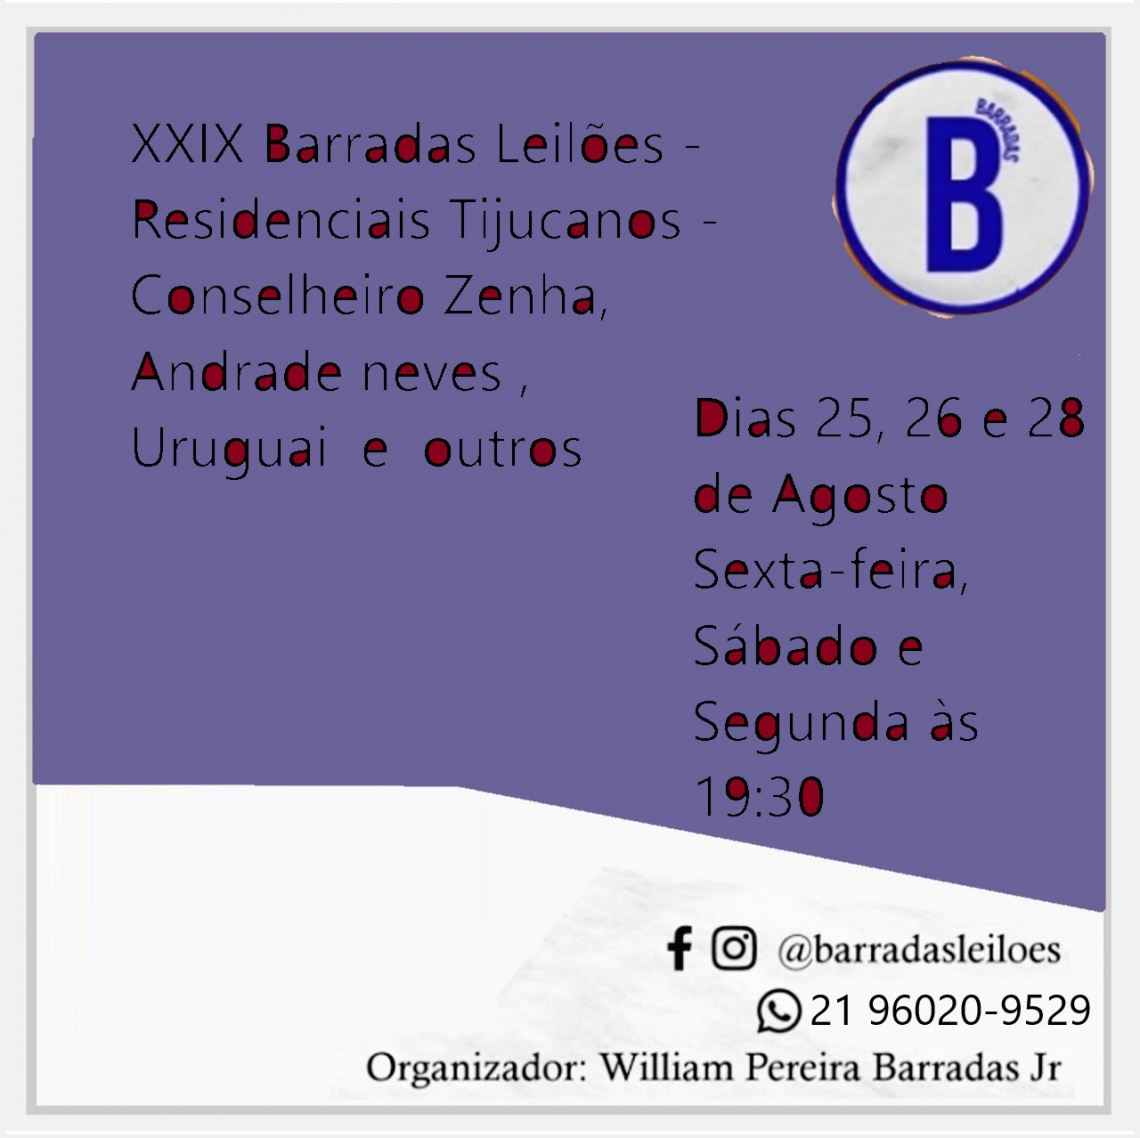 XXIX Barradas Leilões - Residenciais Tijucanos - Conselheiro Zenha, Andrade neves, Uruguai e outros.